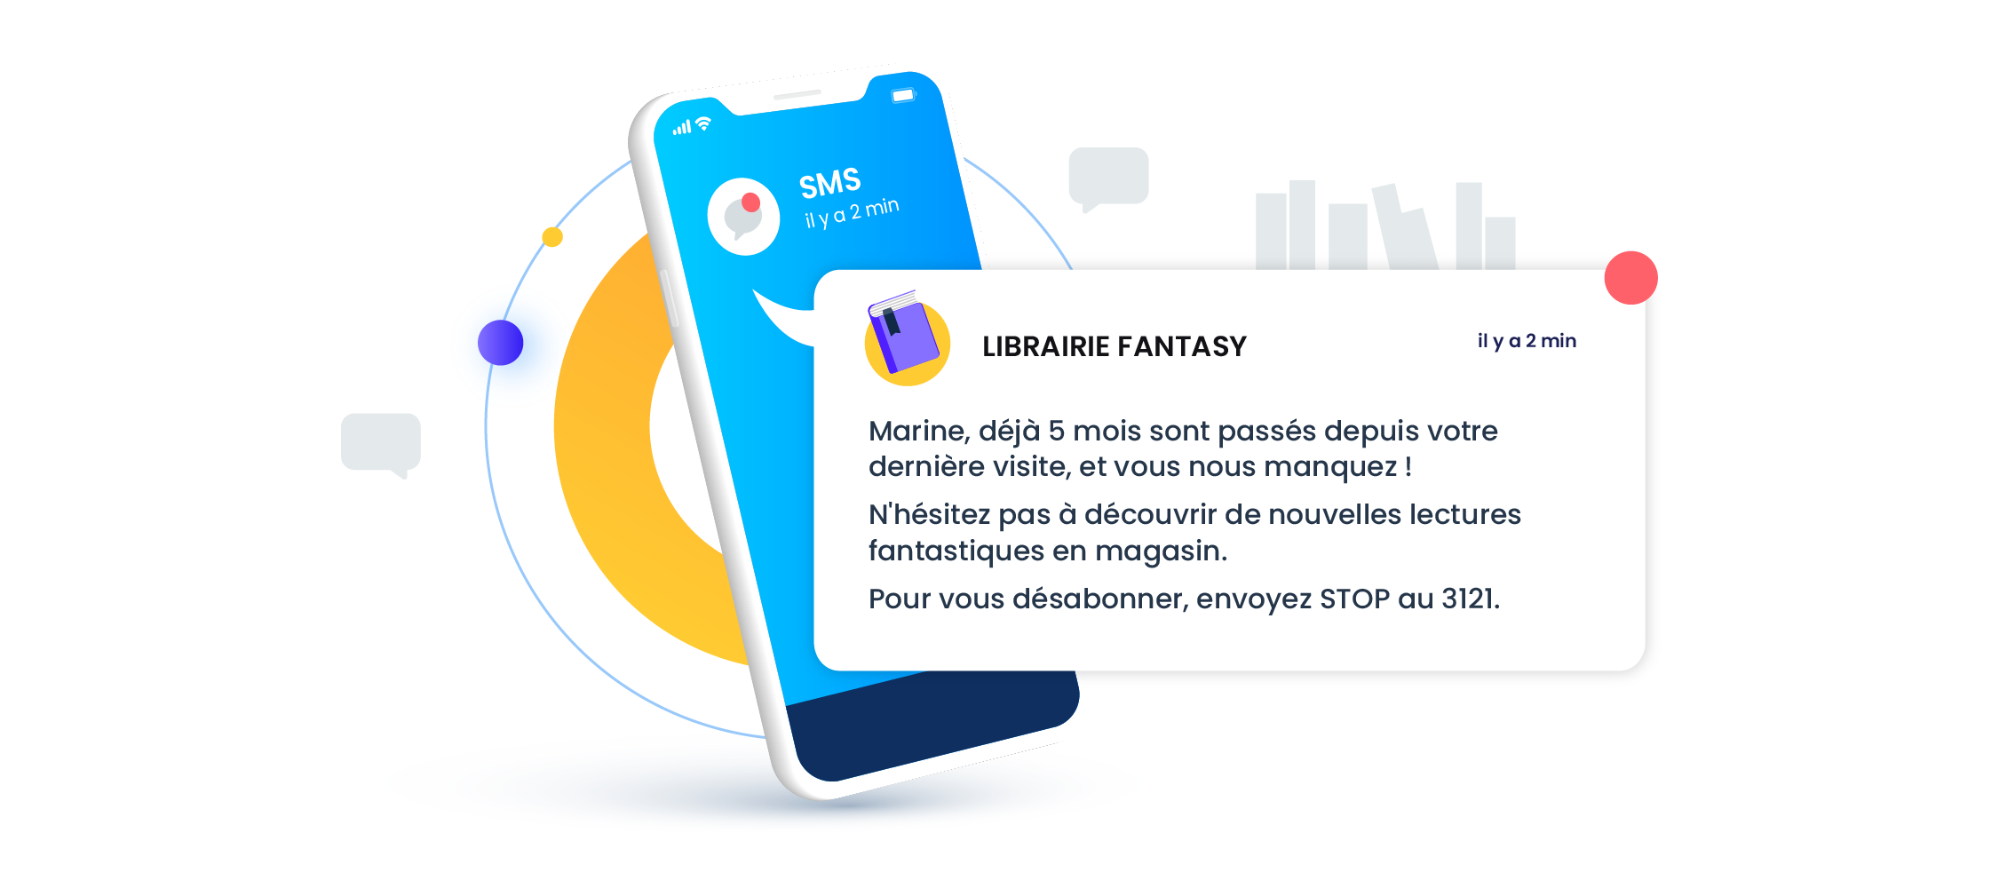 SMS - Librairie fantasy